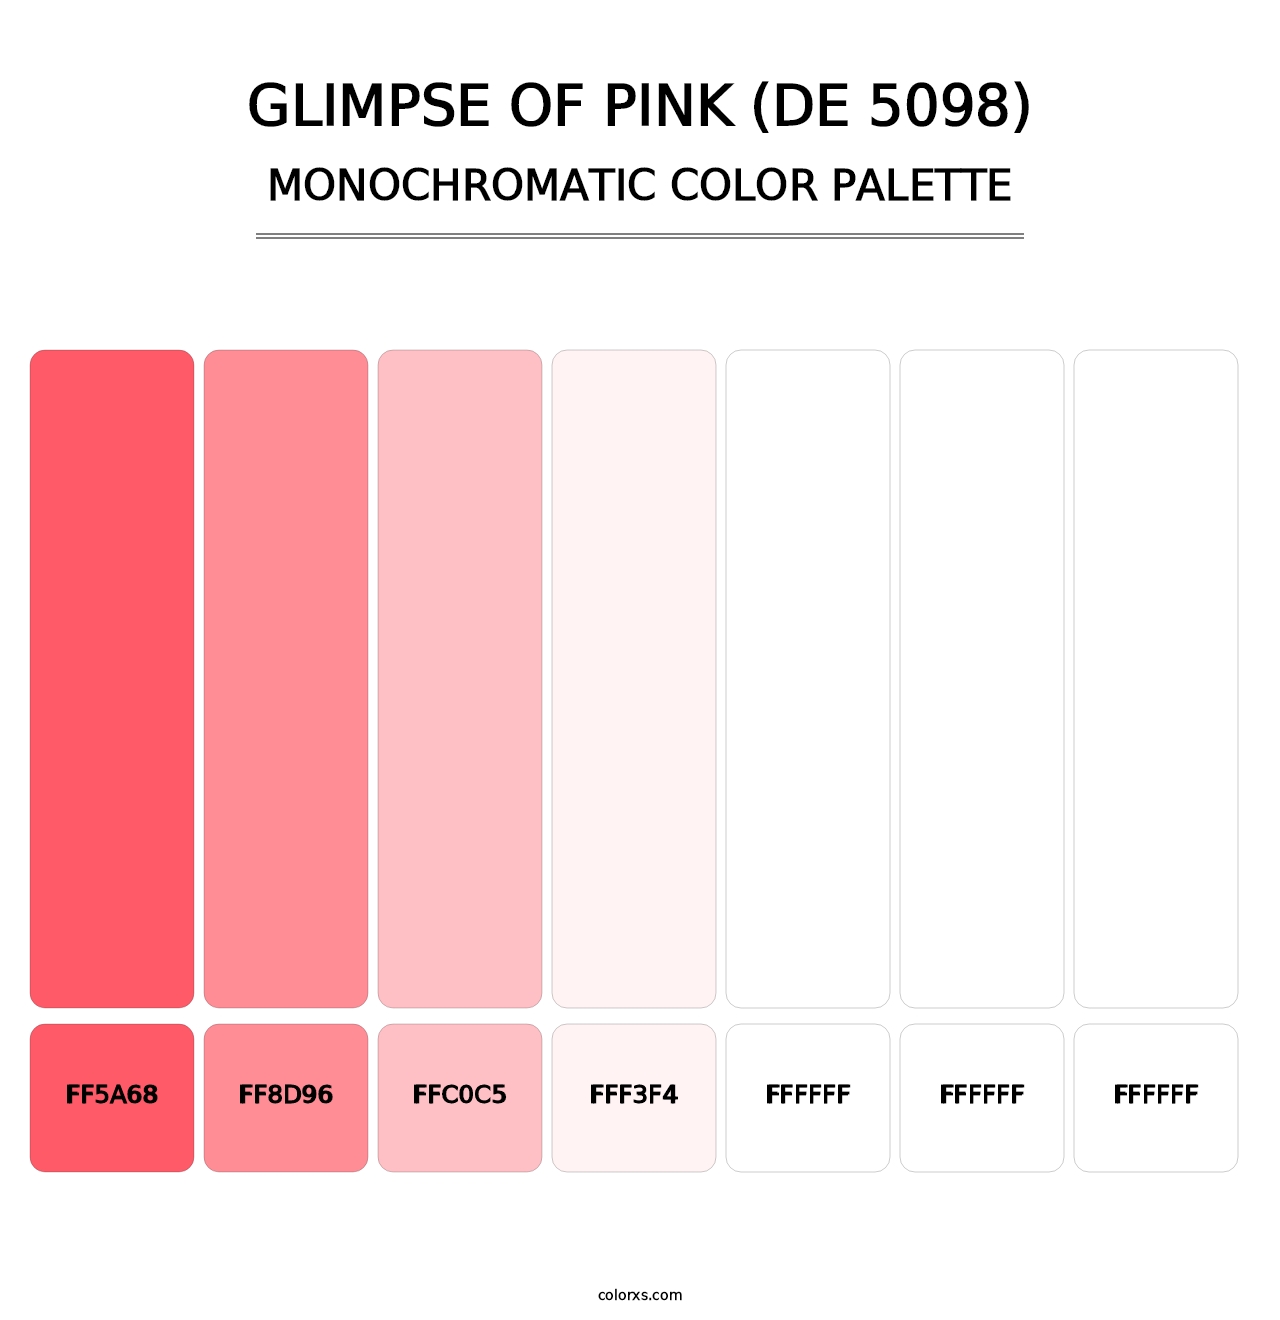 Glimpse of Pink (DE 5098) - Monochromatic Color Palette